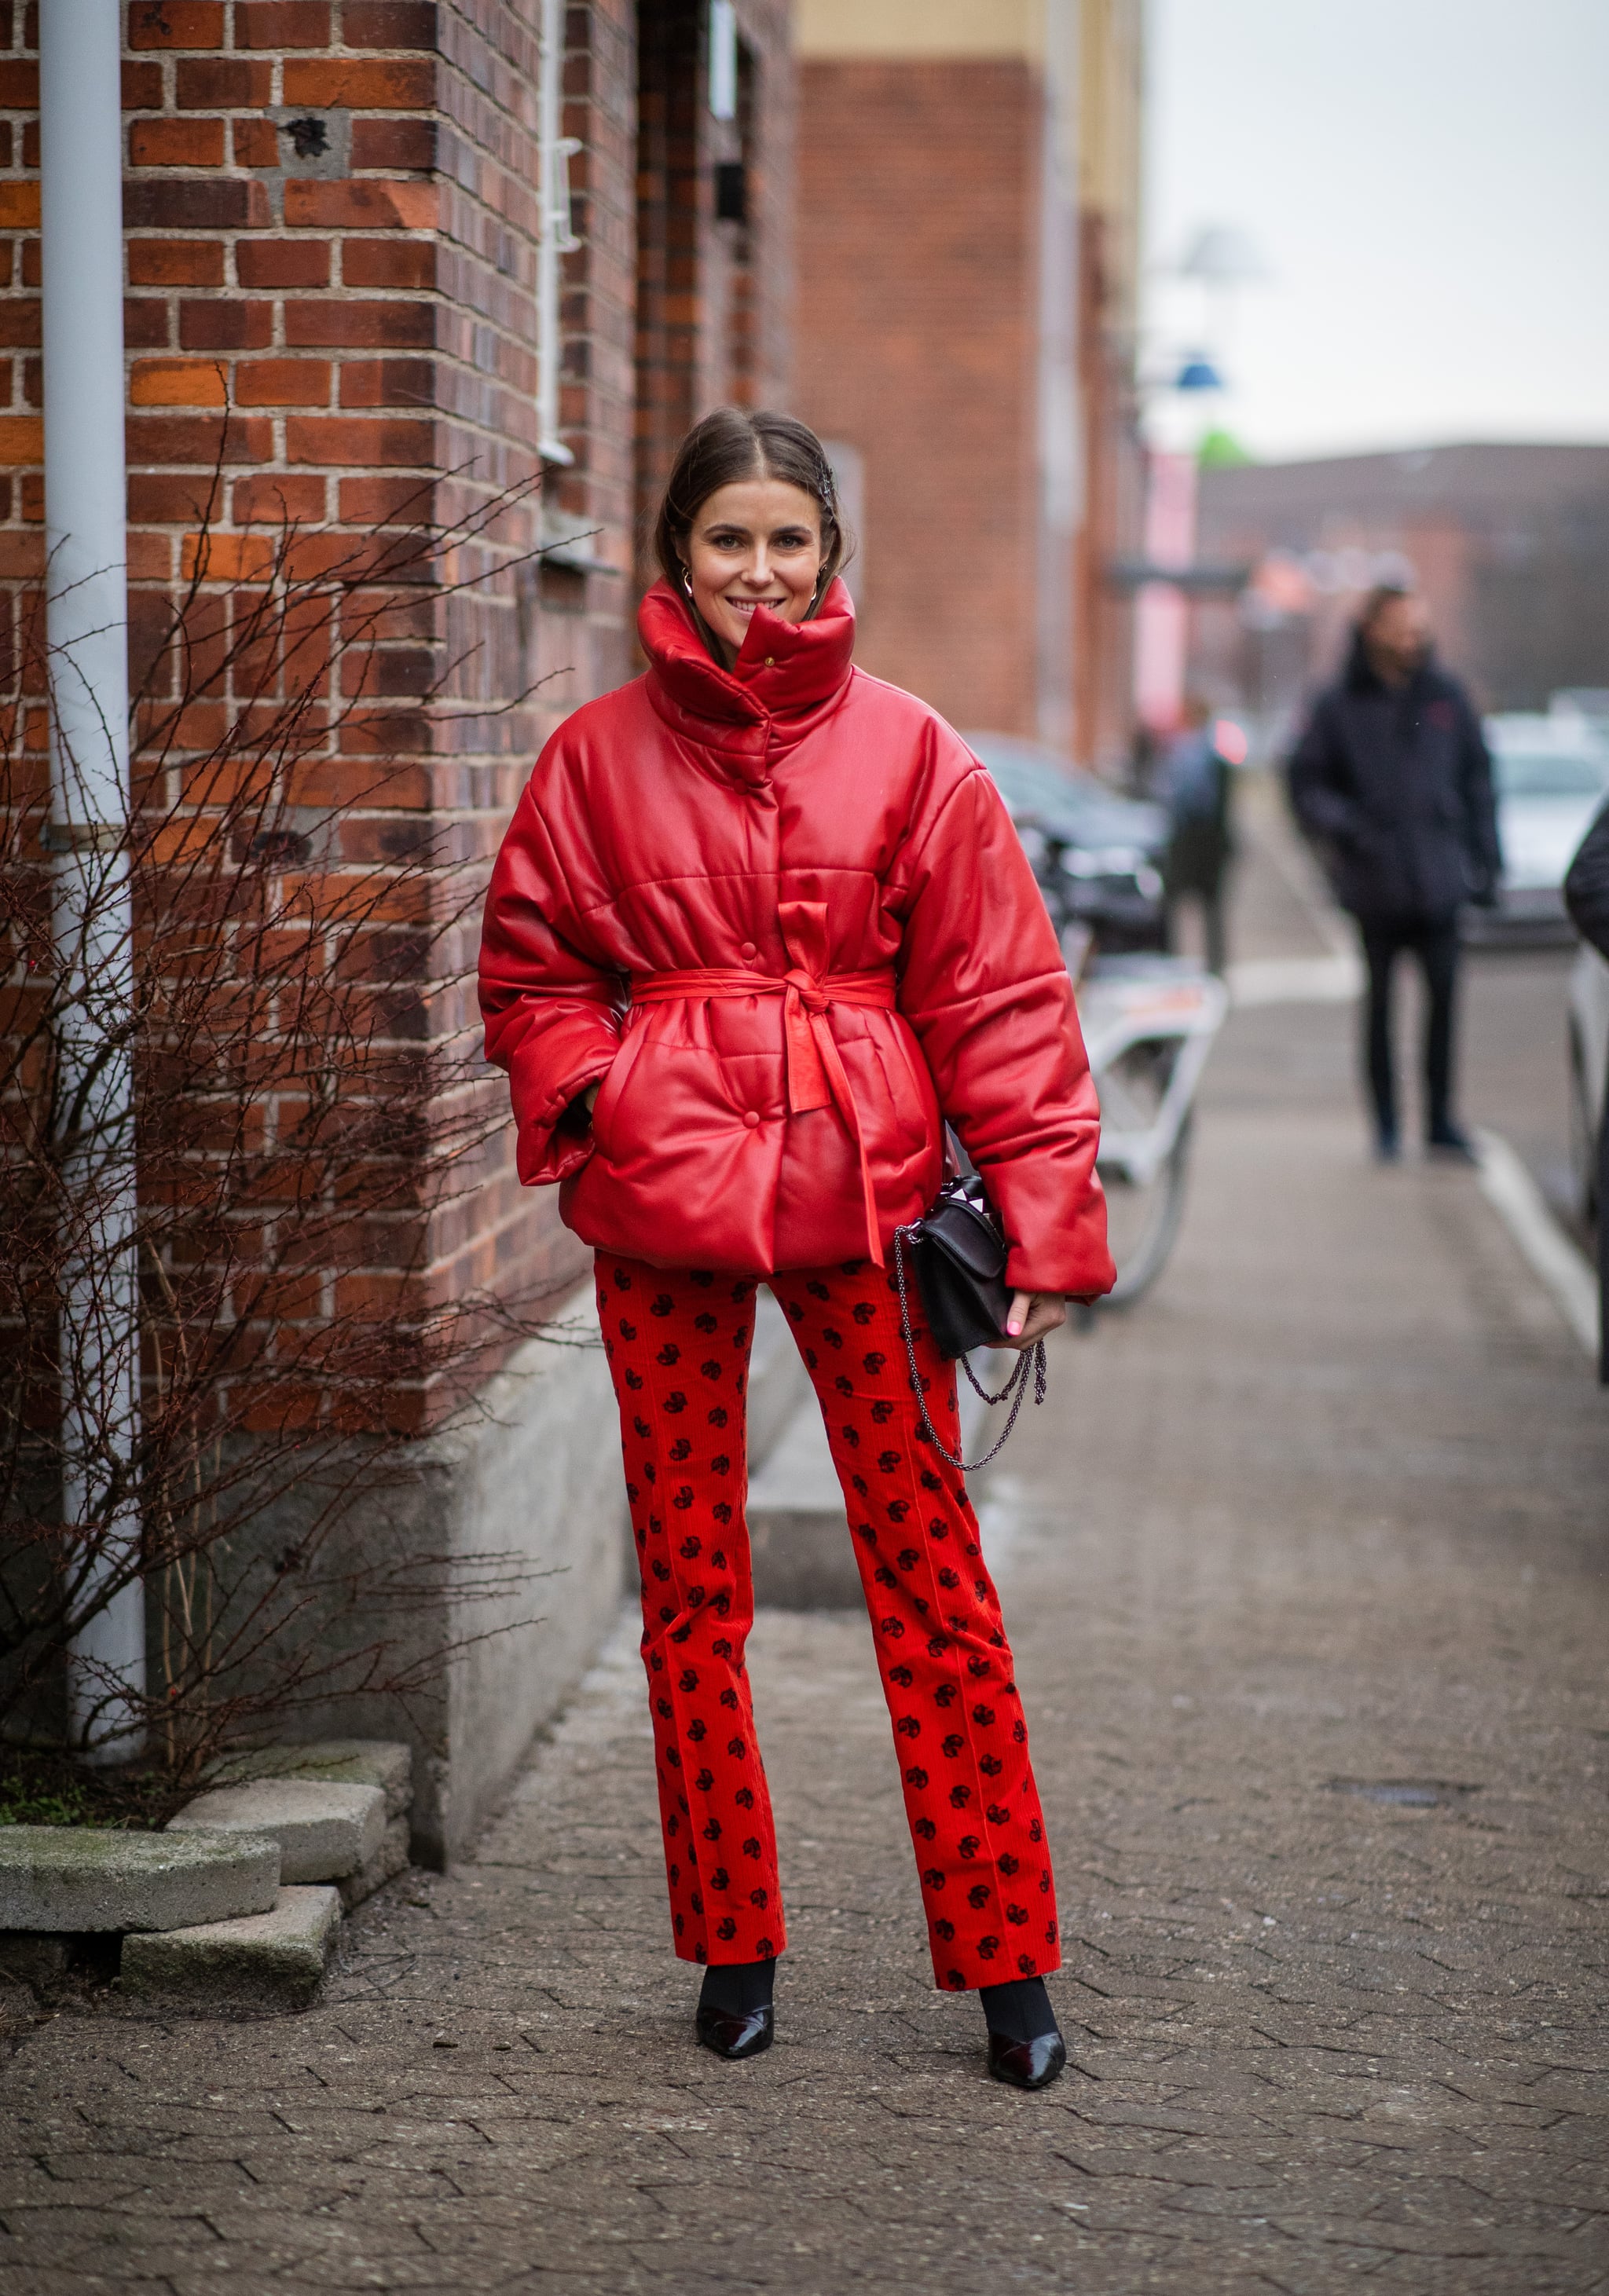 С чем носить красную куртку весной женщинам